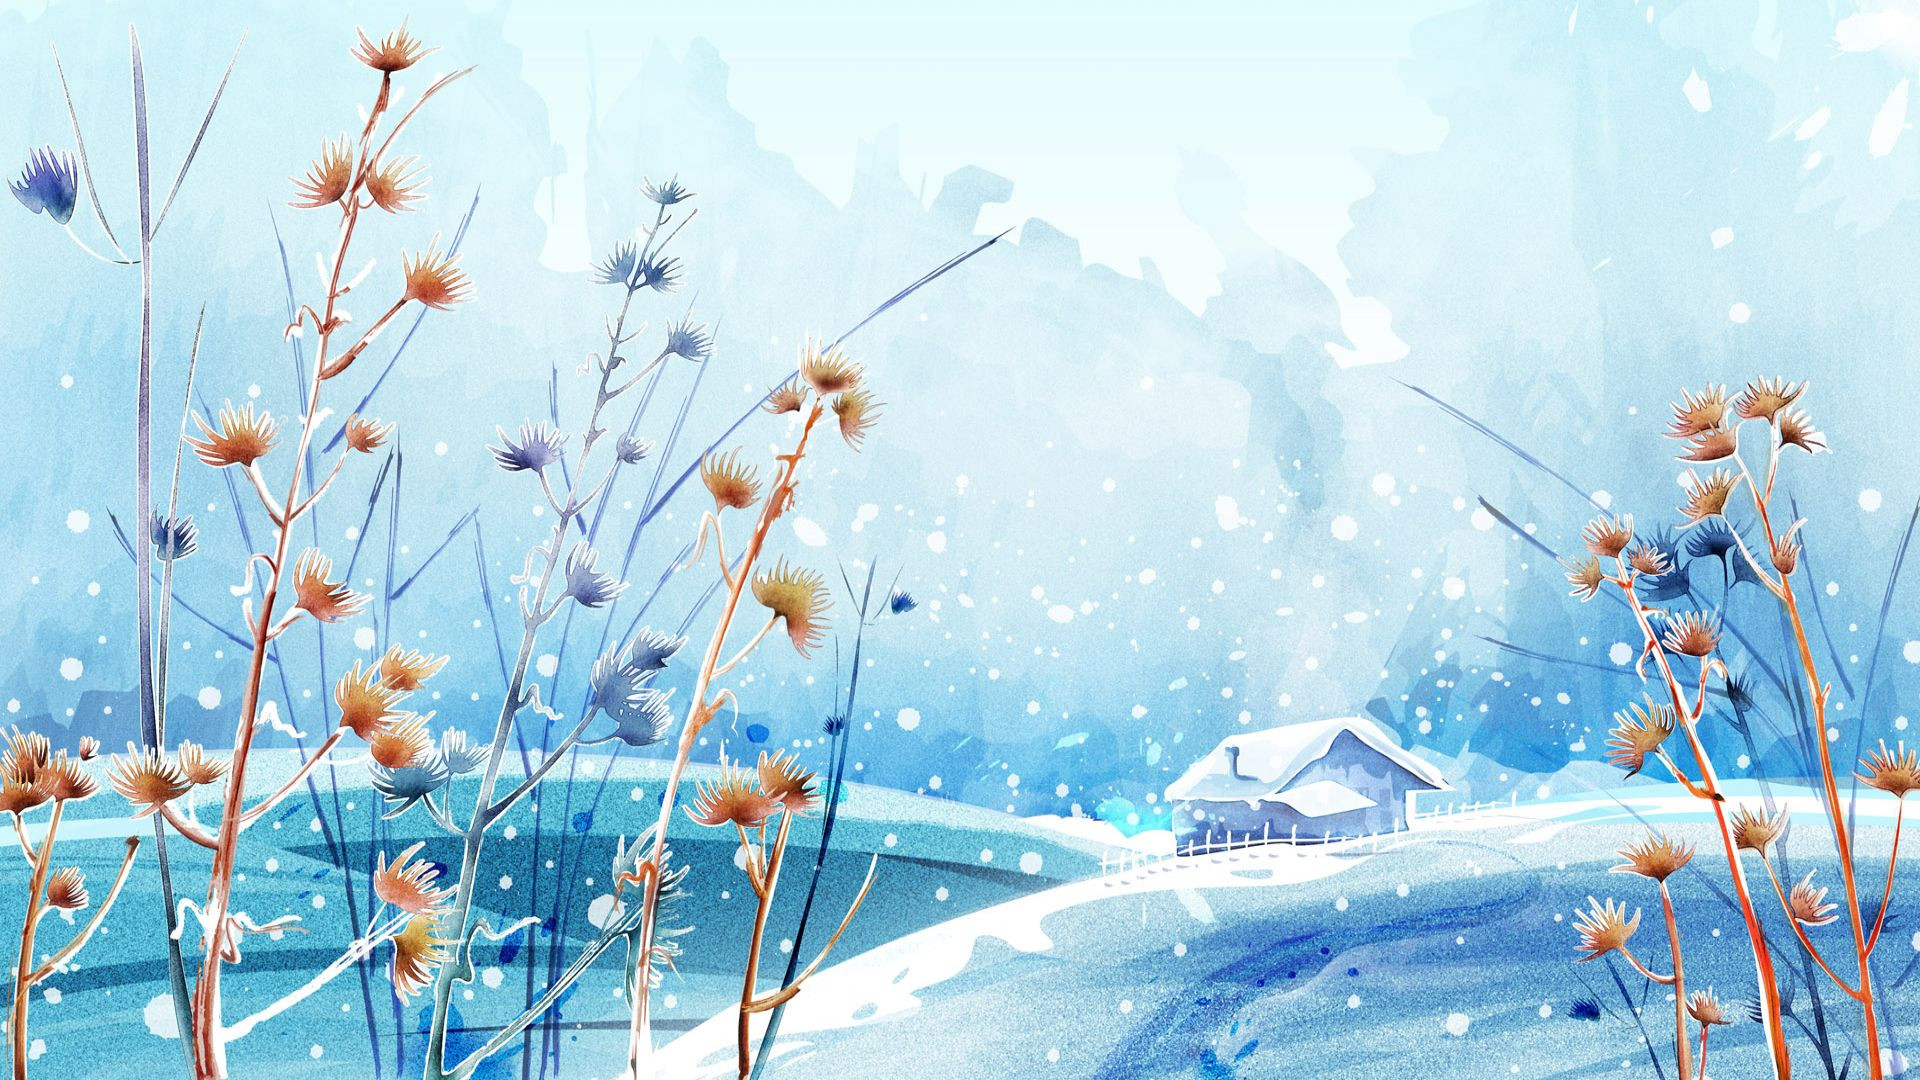 winter images for desktop